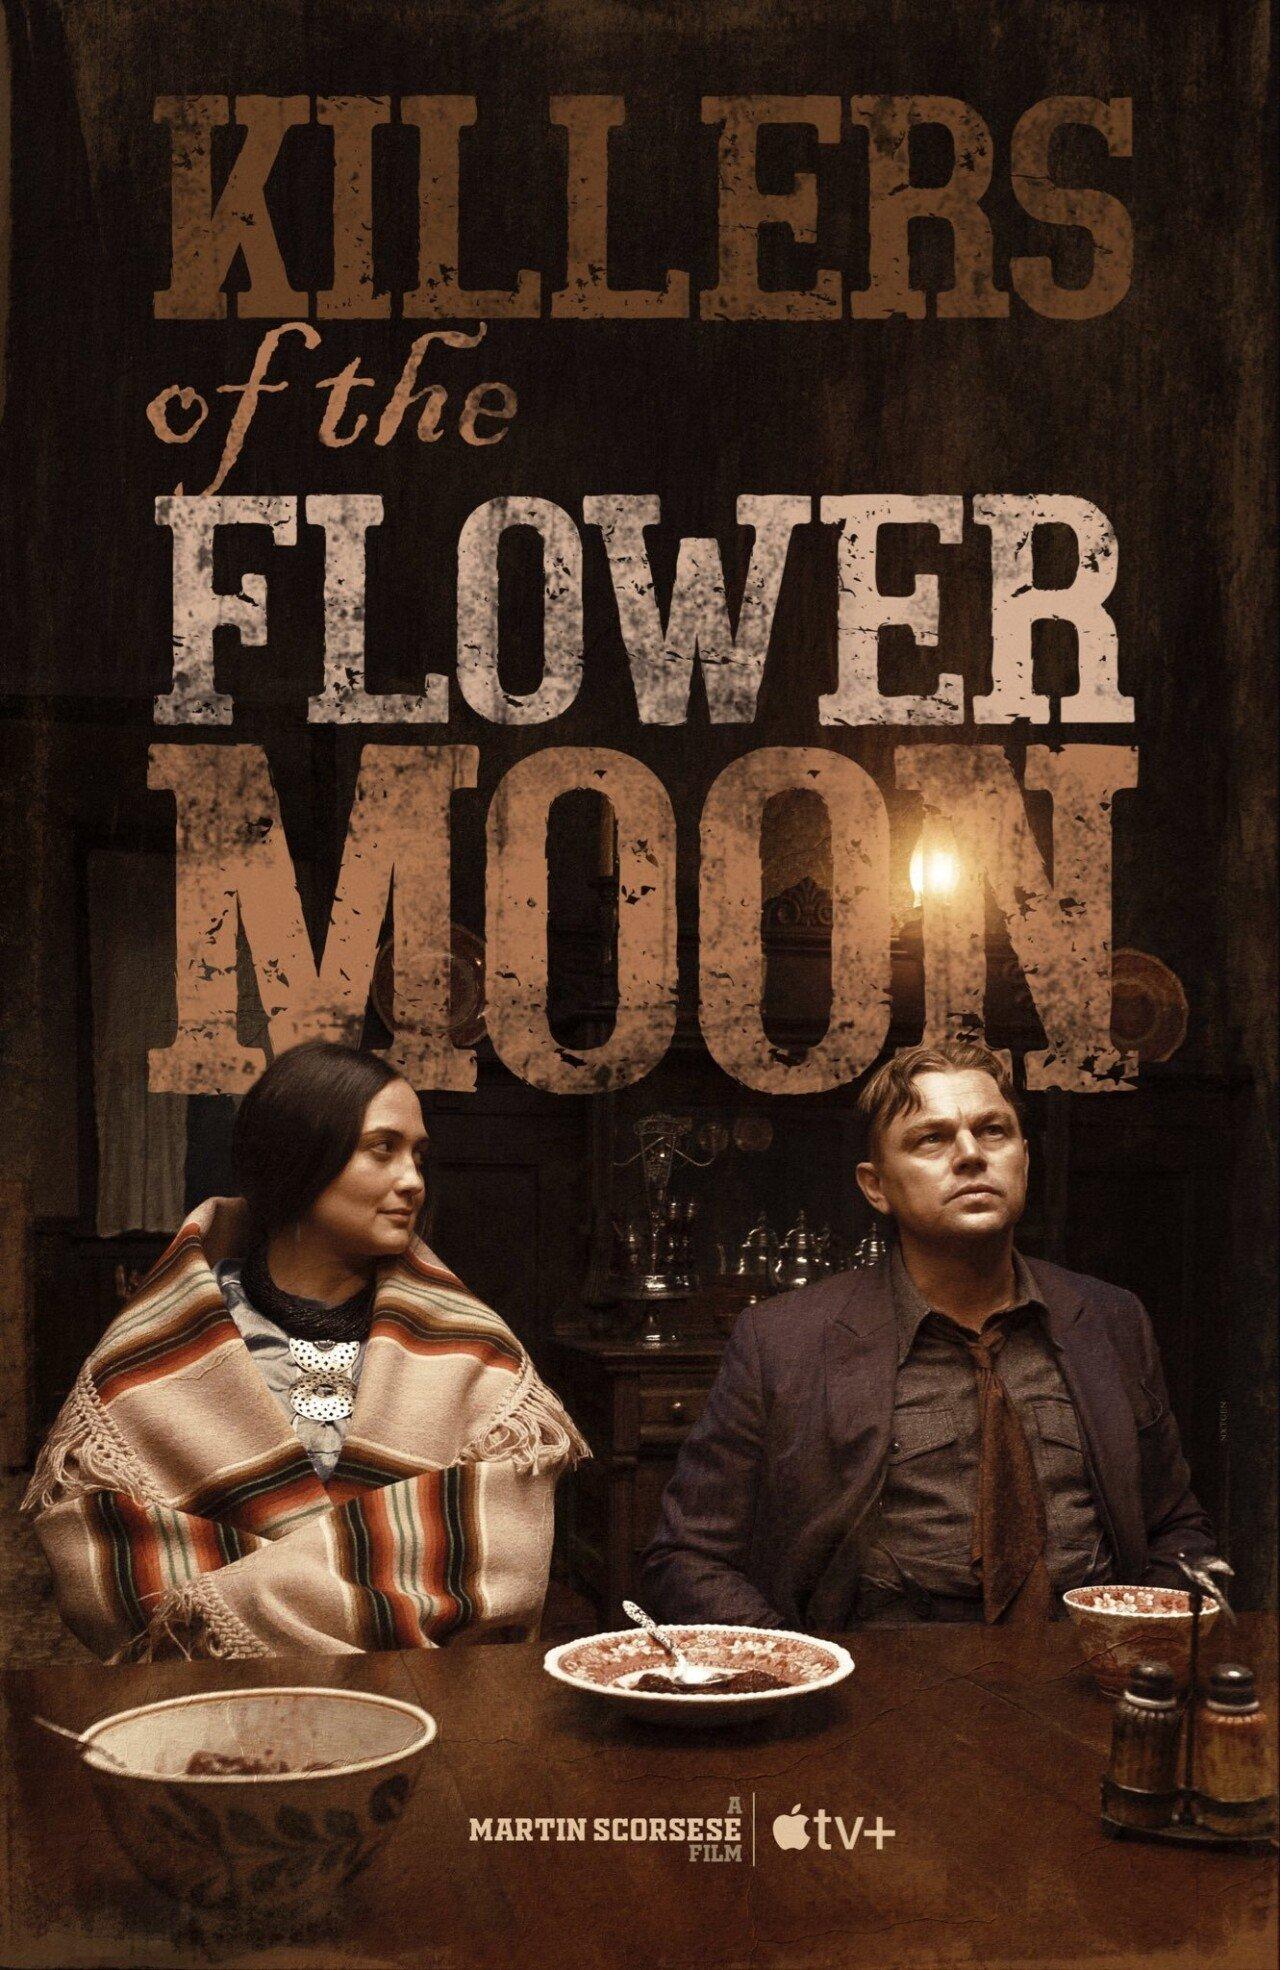 디카프리오 주연의 마틴 스콜세지 신작 ''Killers of the Flower Moon'' 로튼 토마토 총평